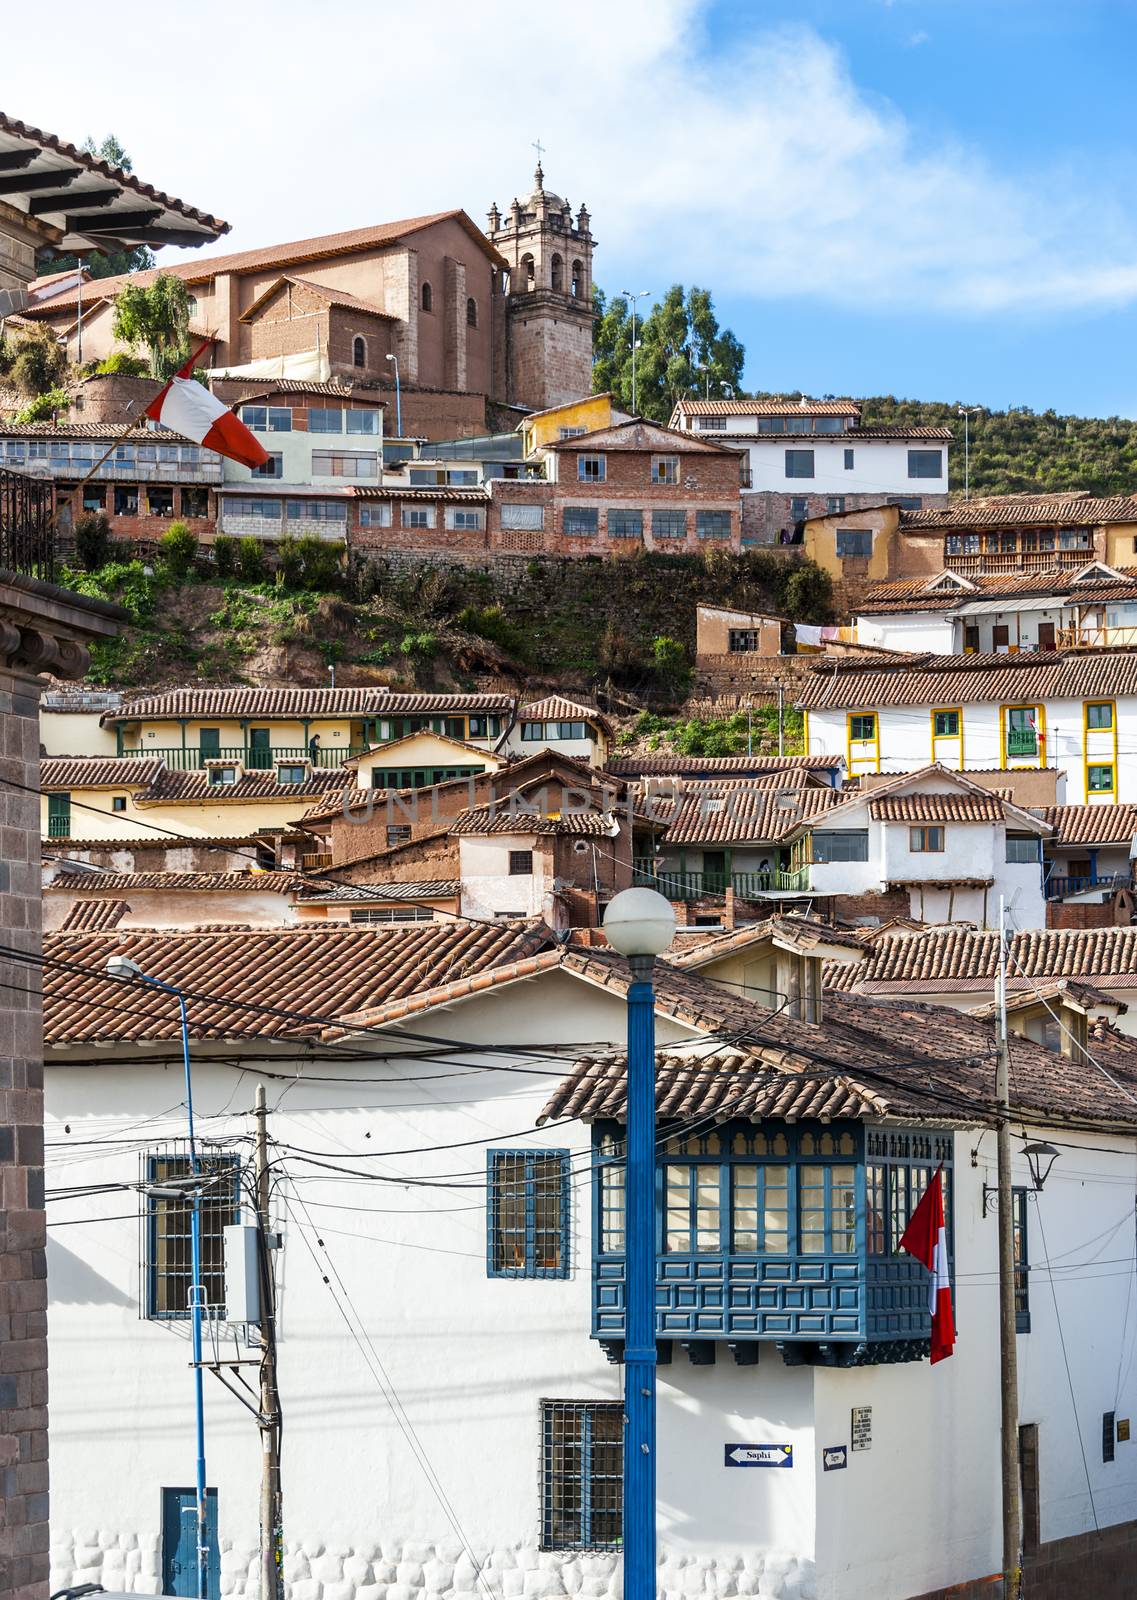 City of Cuzco in Peru, South America by xura